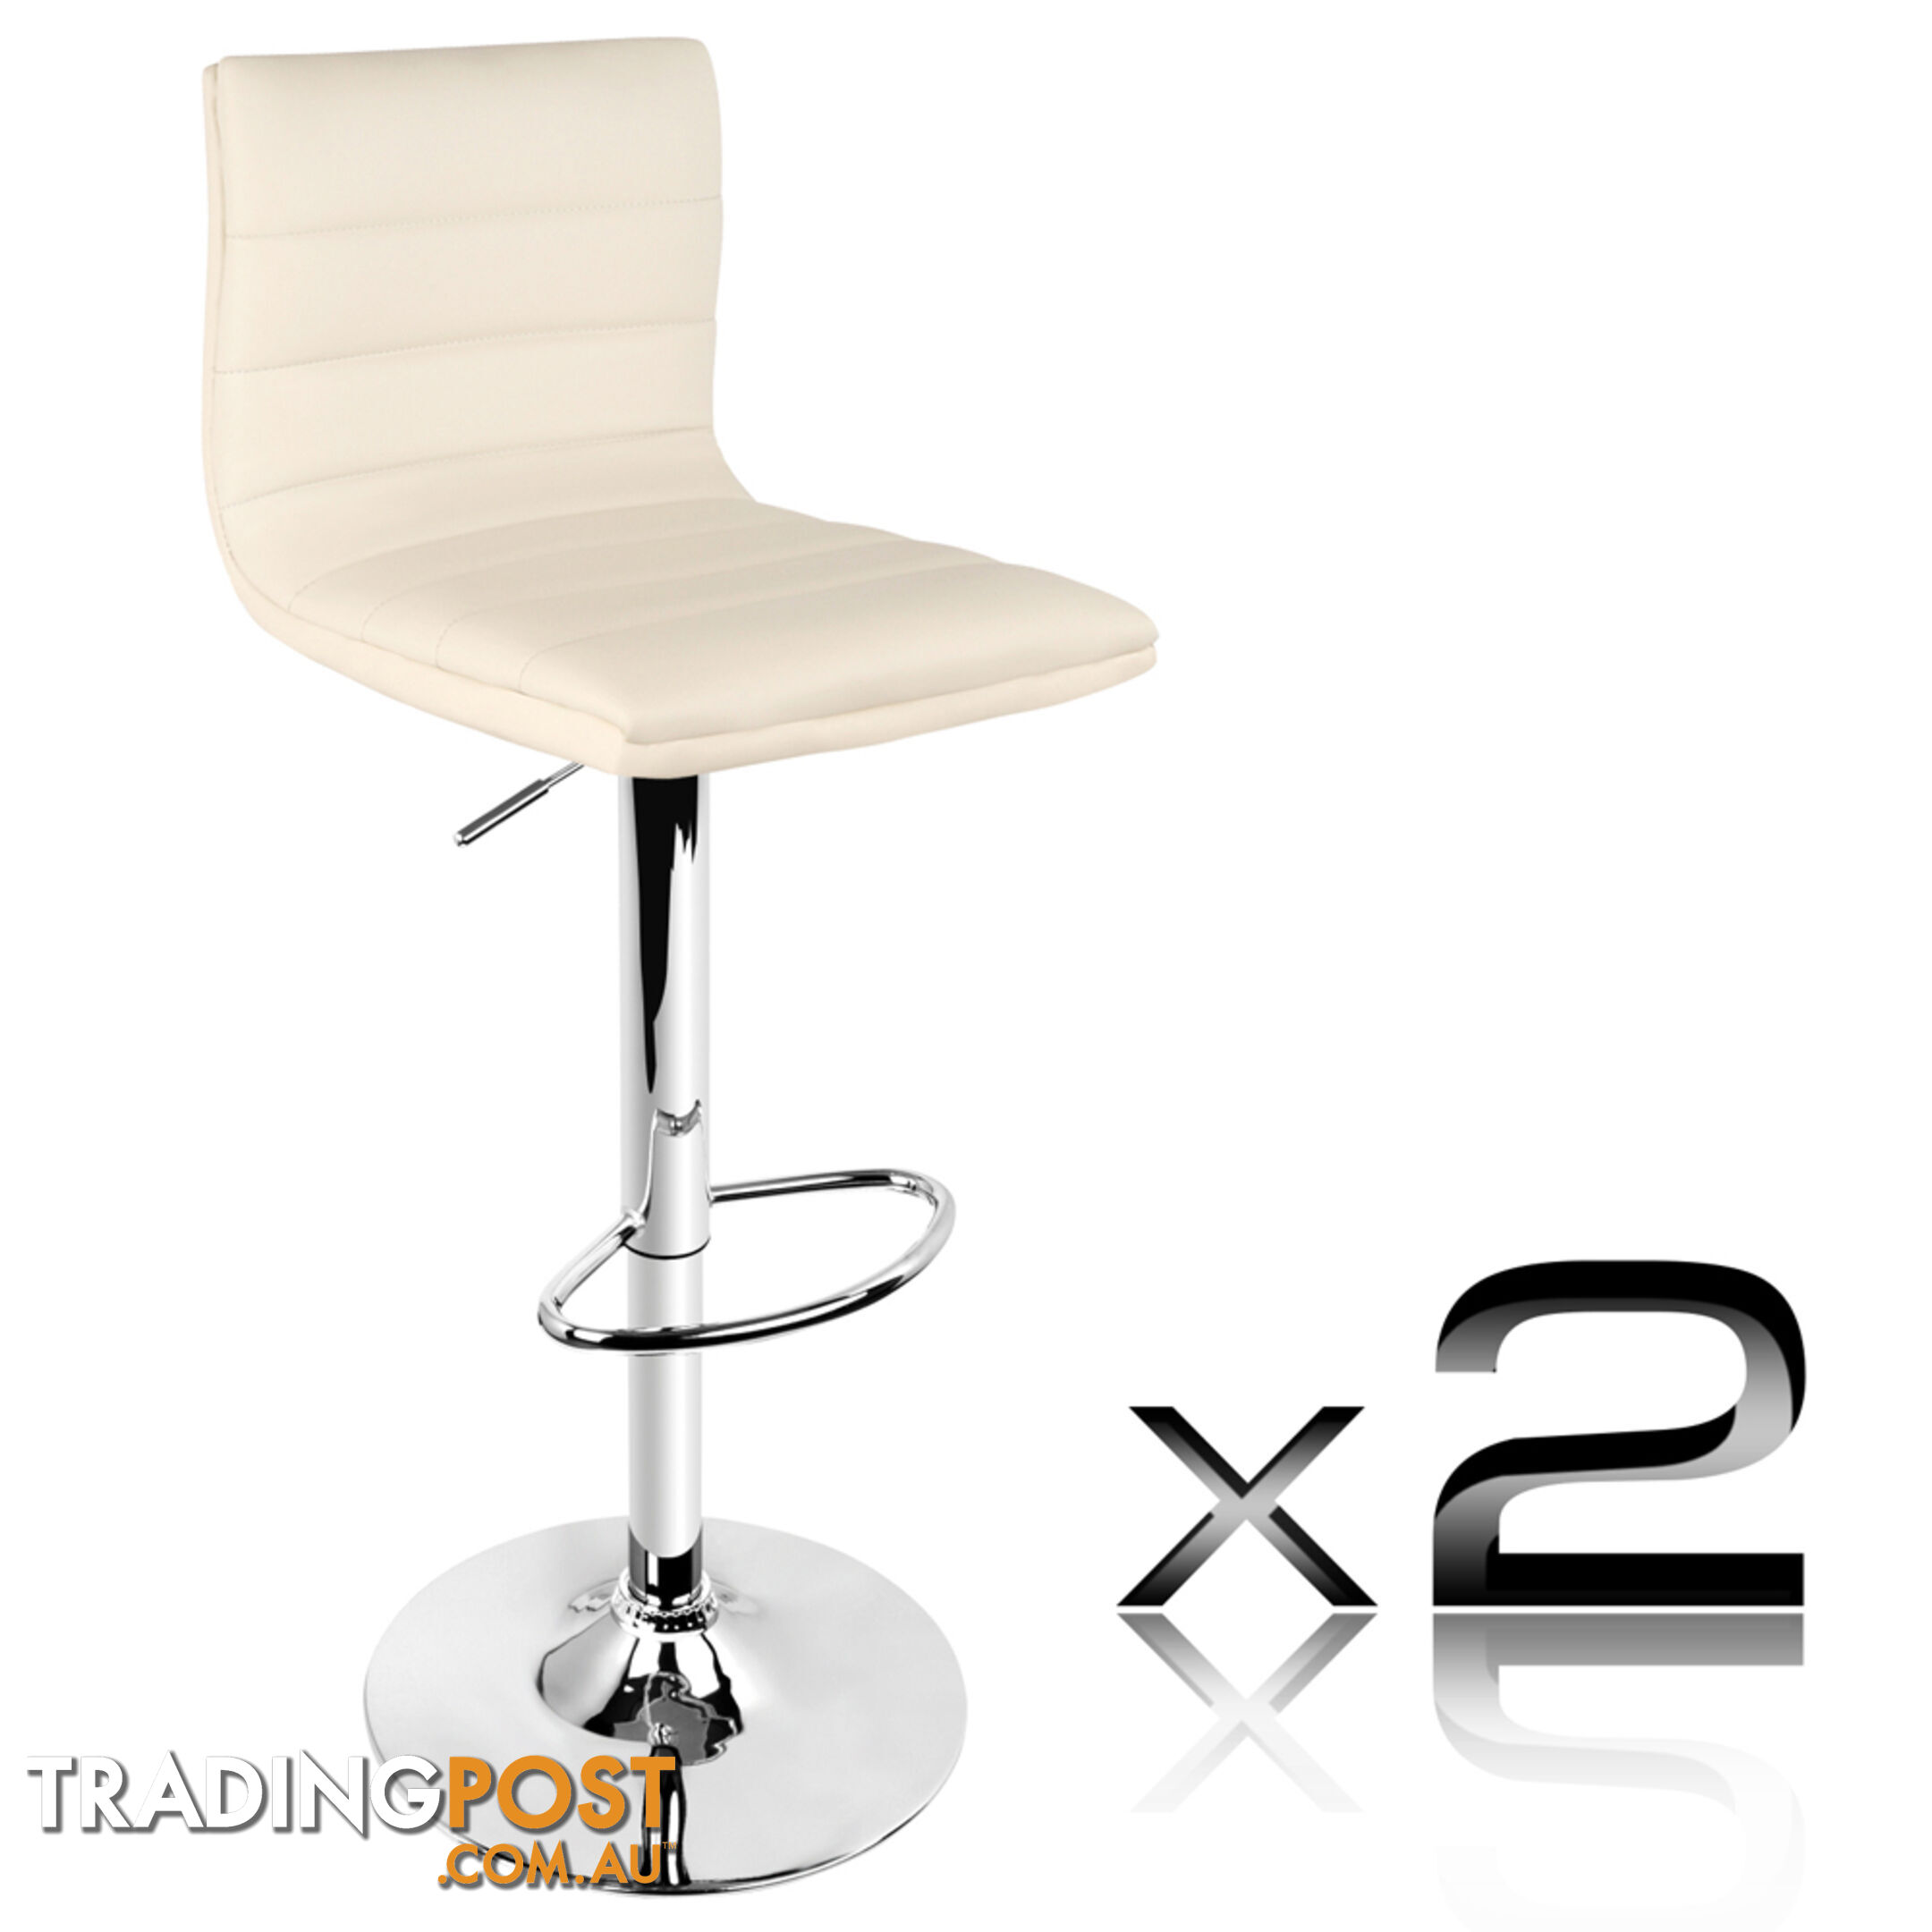 2 x PU Leather Backrest Kitchen Bar Stool Cafe Swivel Breakfast Chair Beige